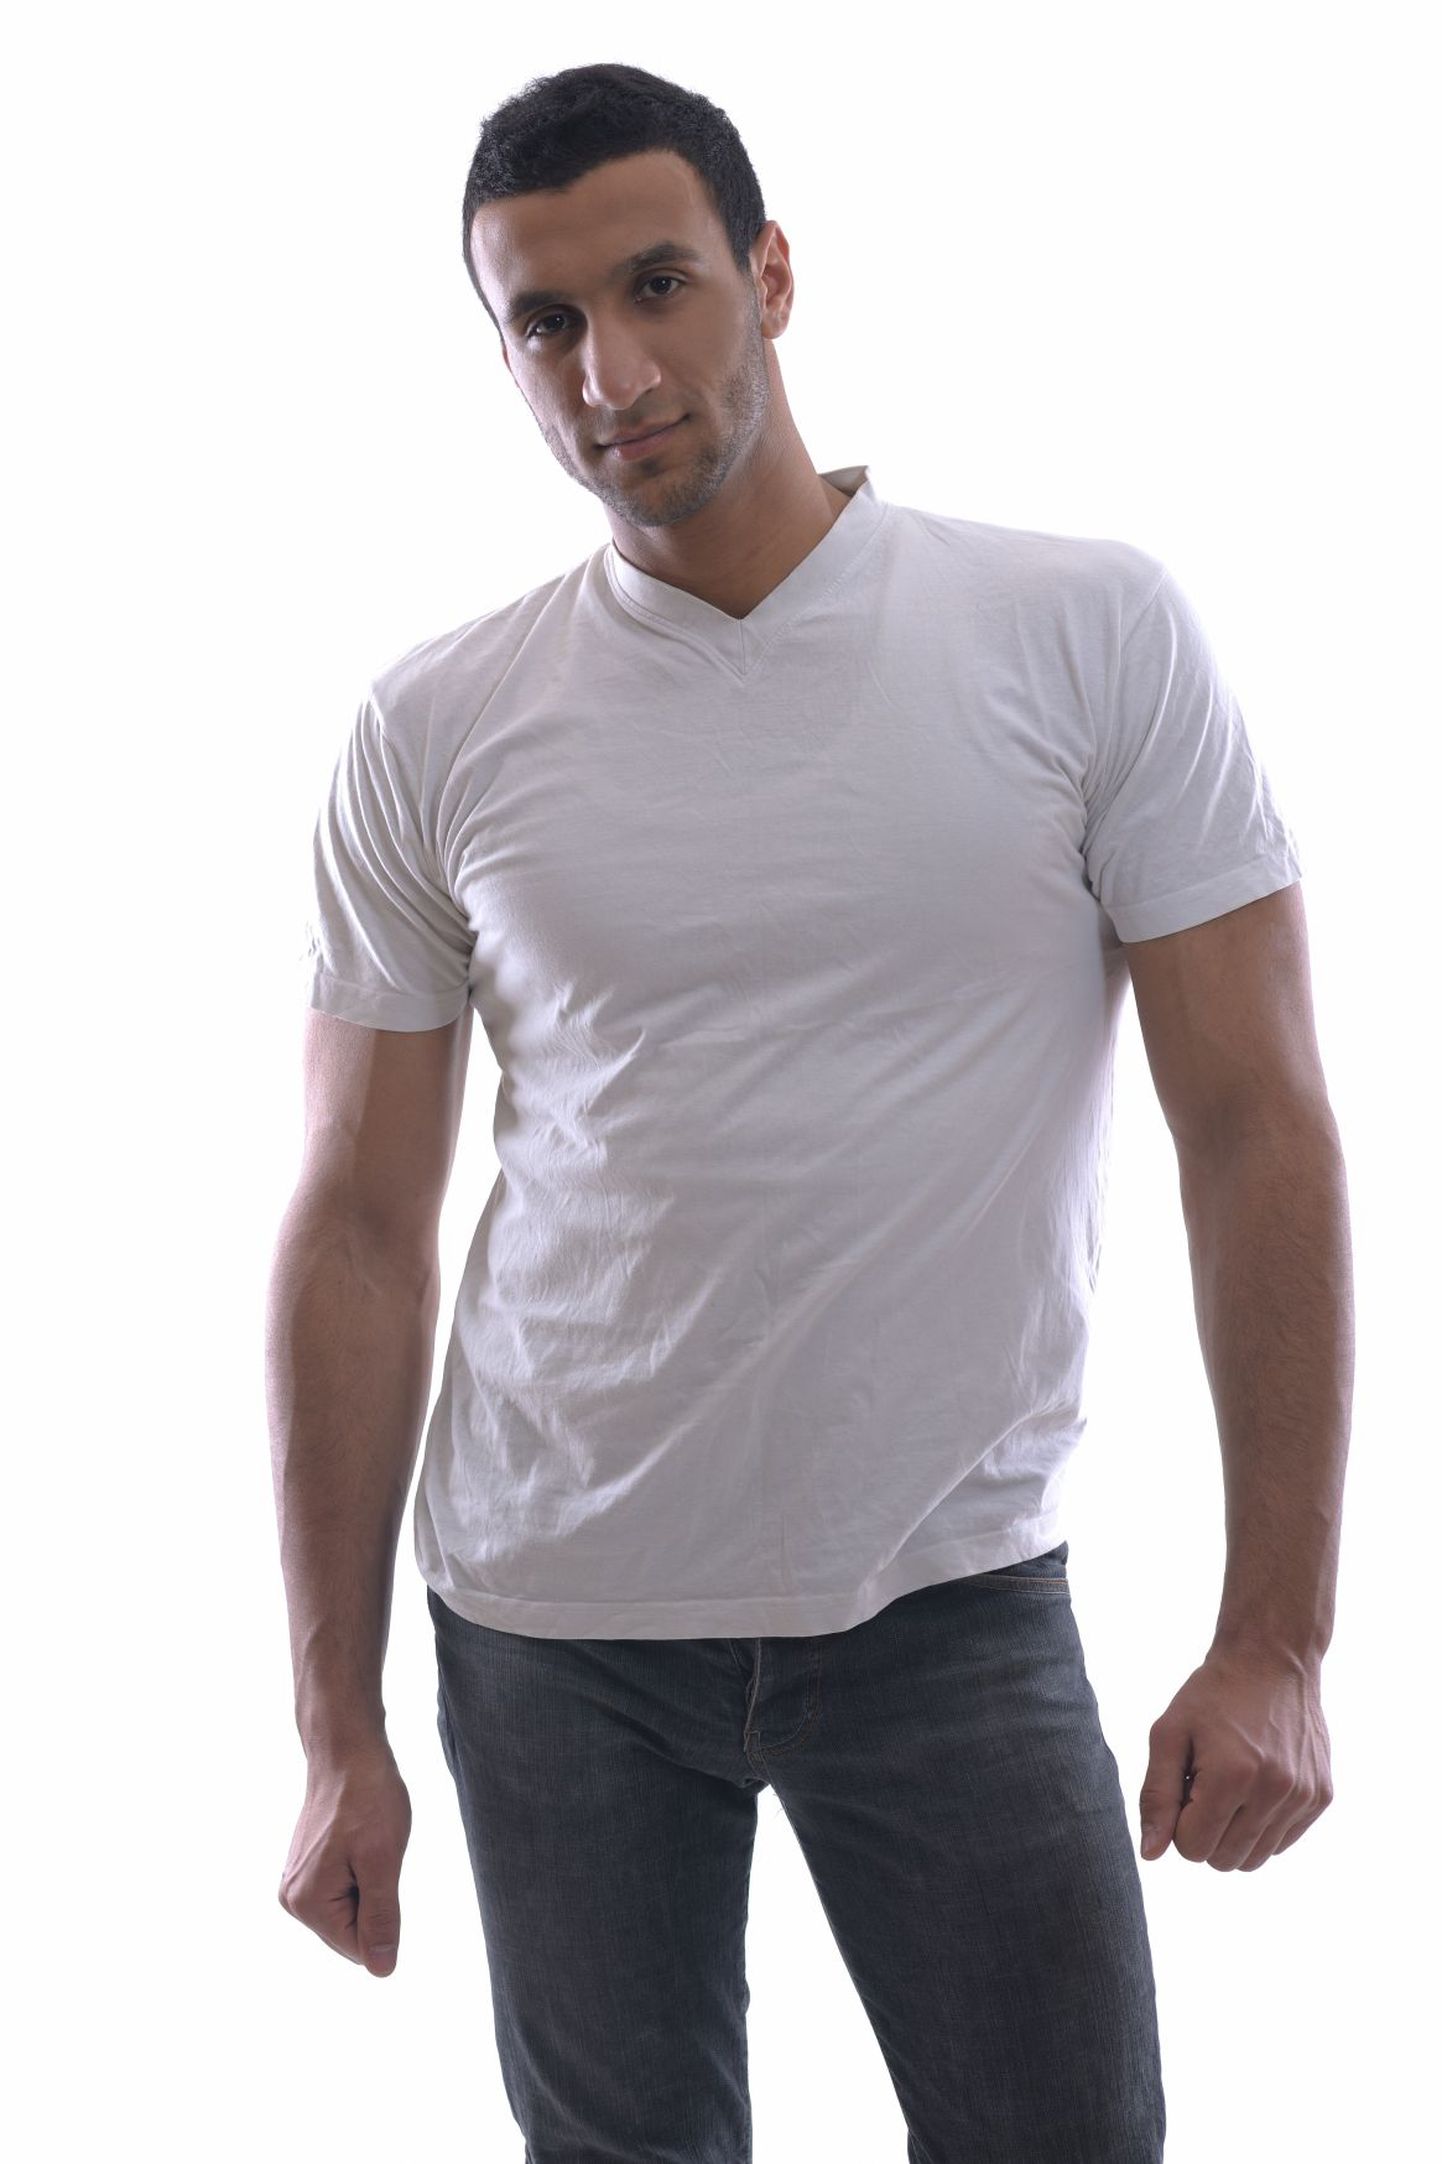 Lihtne valge t-särk muudab mehe ihaldusväärsemaks.